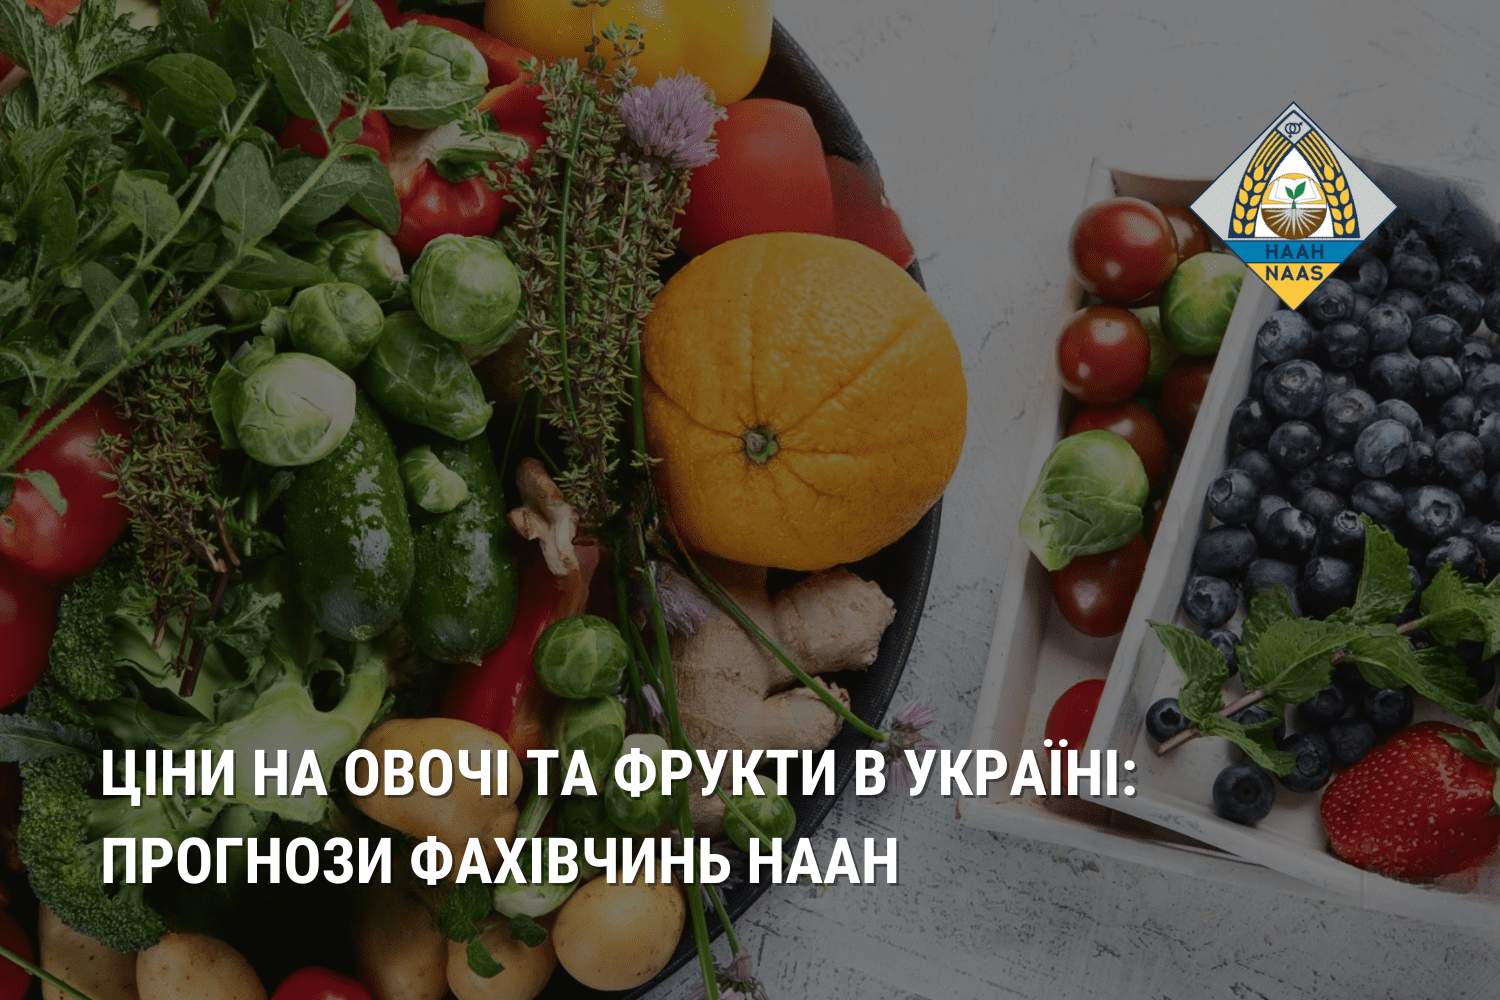 Ціни на овочі та фрукти в Україні: прогнози фахівчинь НААН